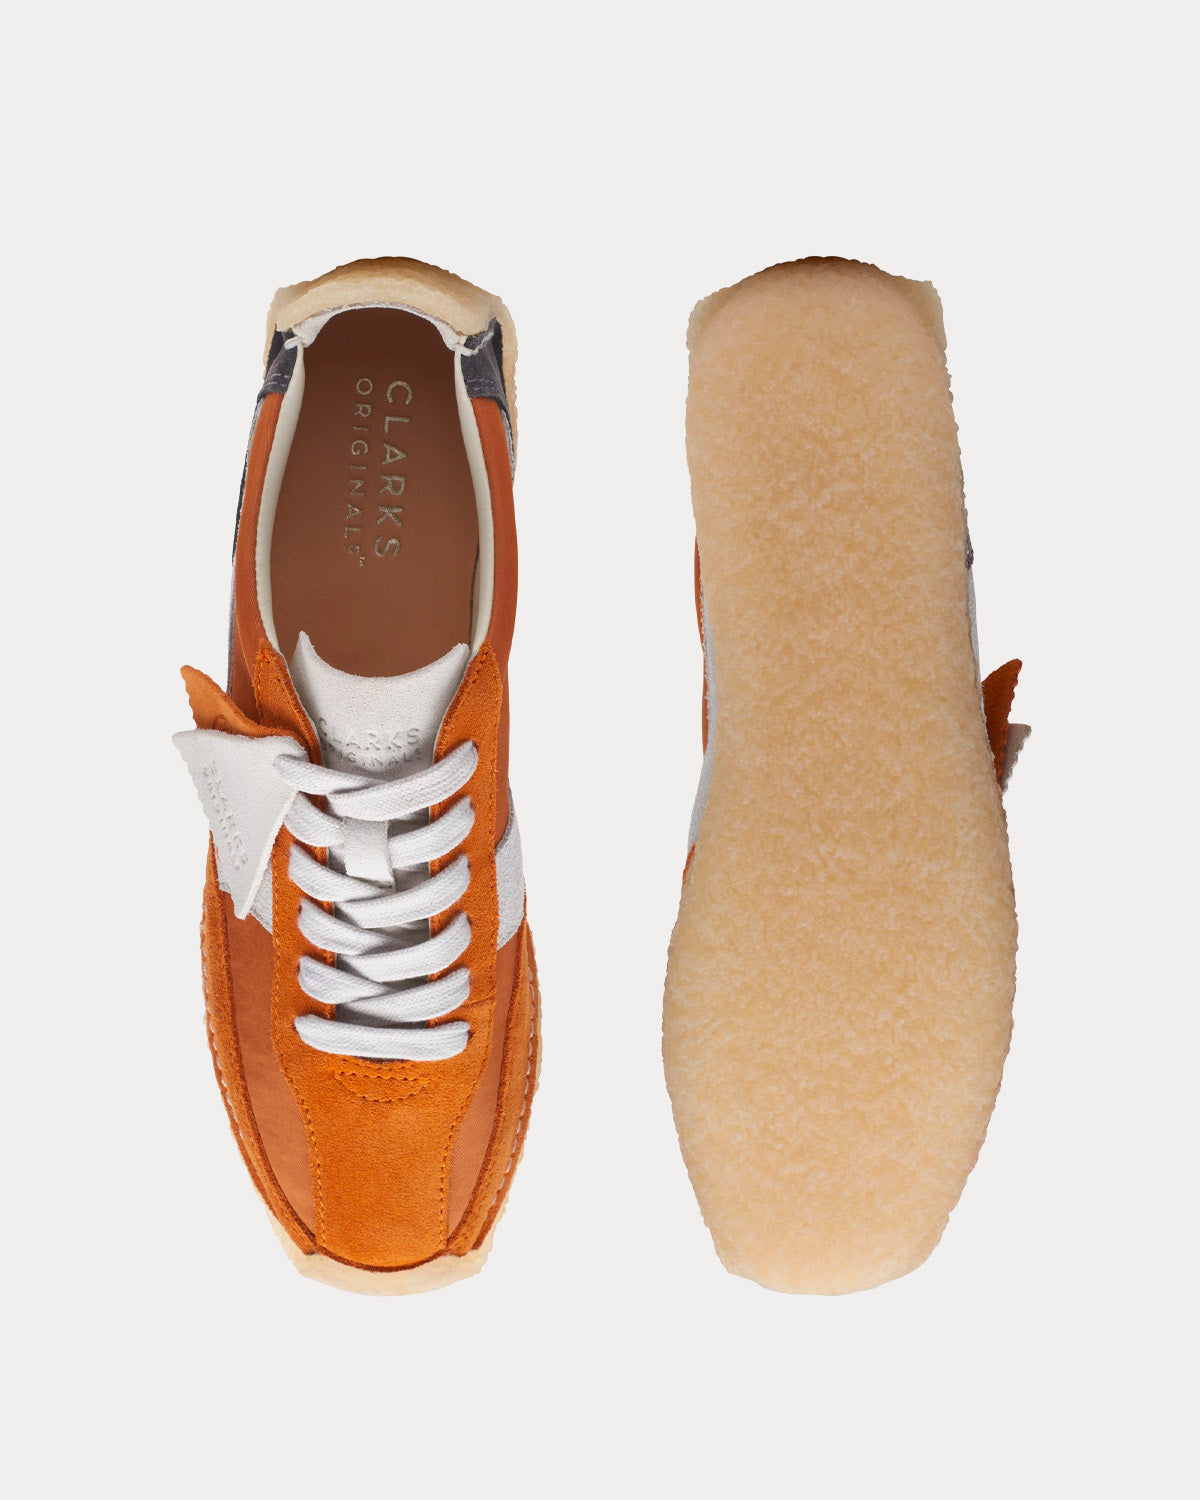 Clarks - Natalie Run Orange Combination Low Top Sneakers